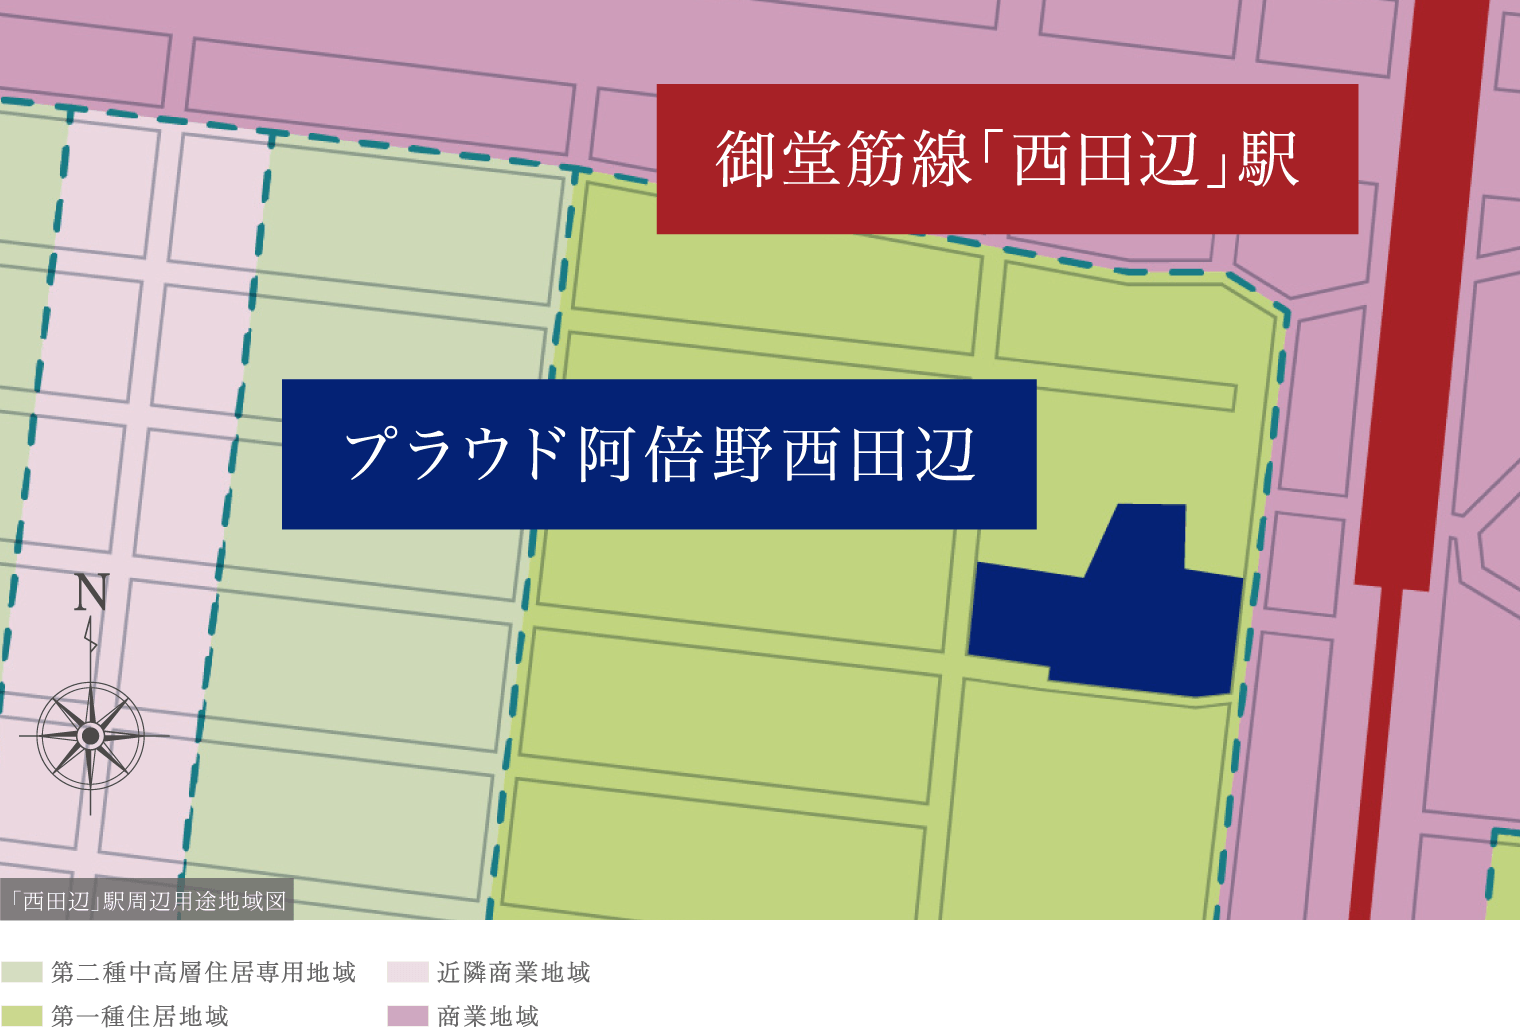 「西田辺」駅周辺用途地域図